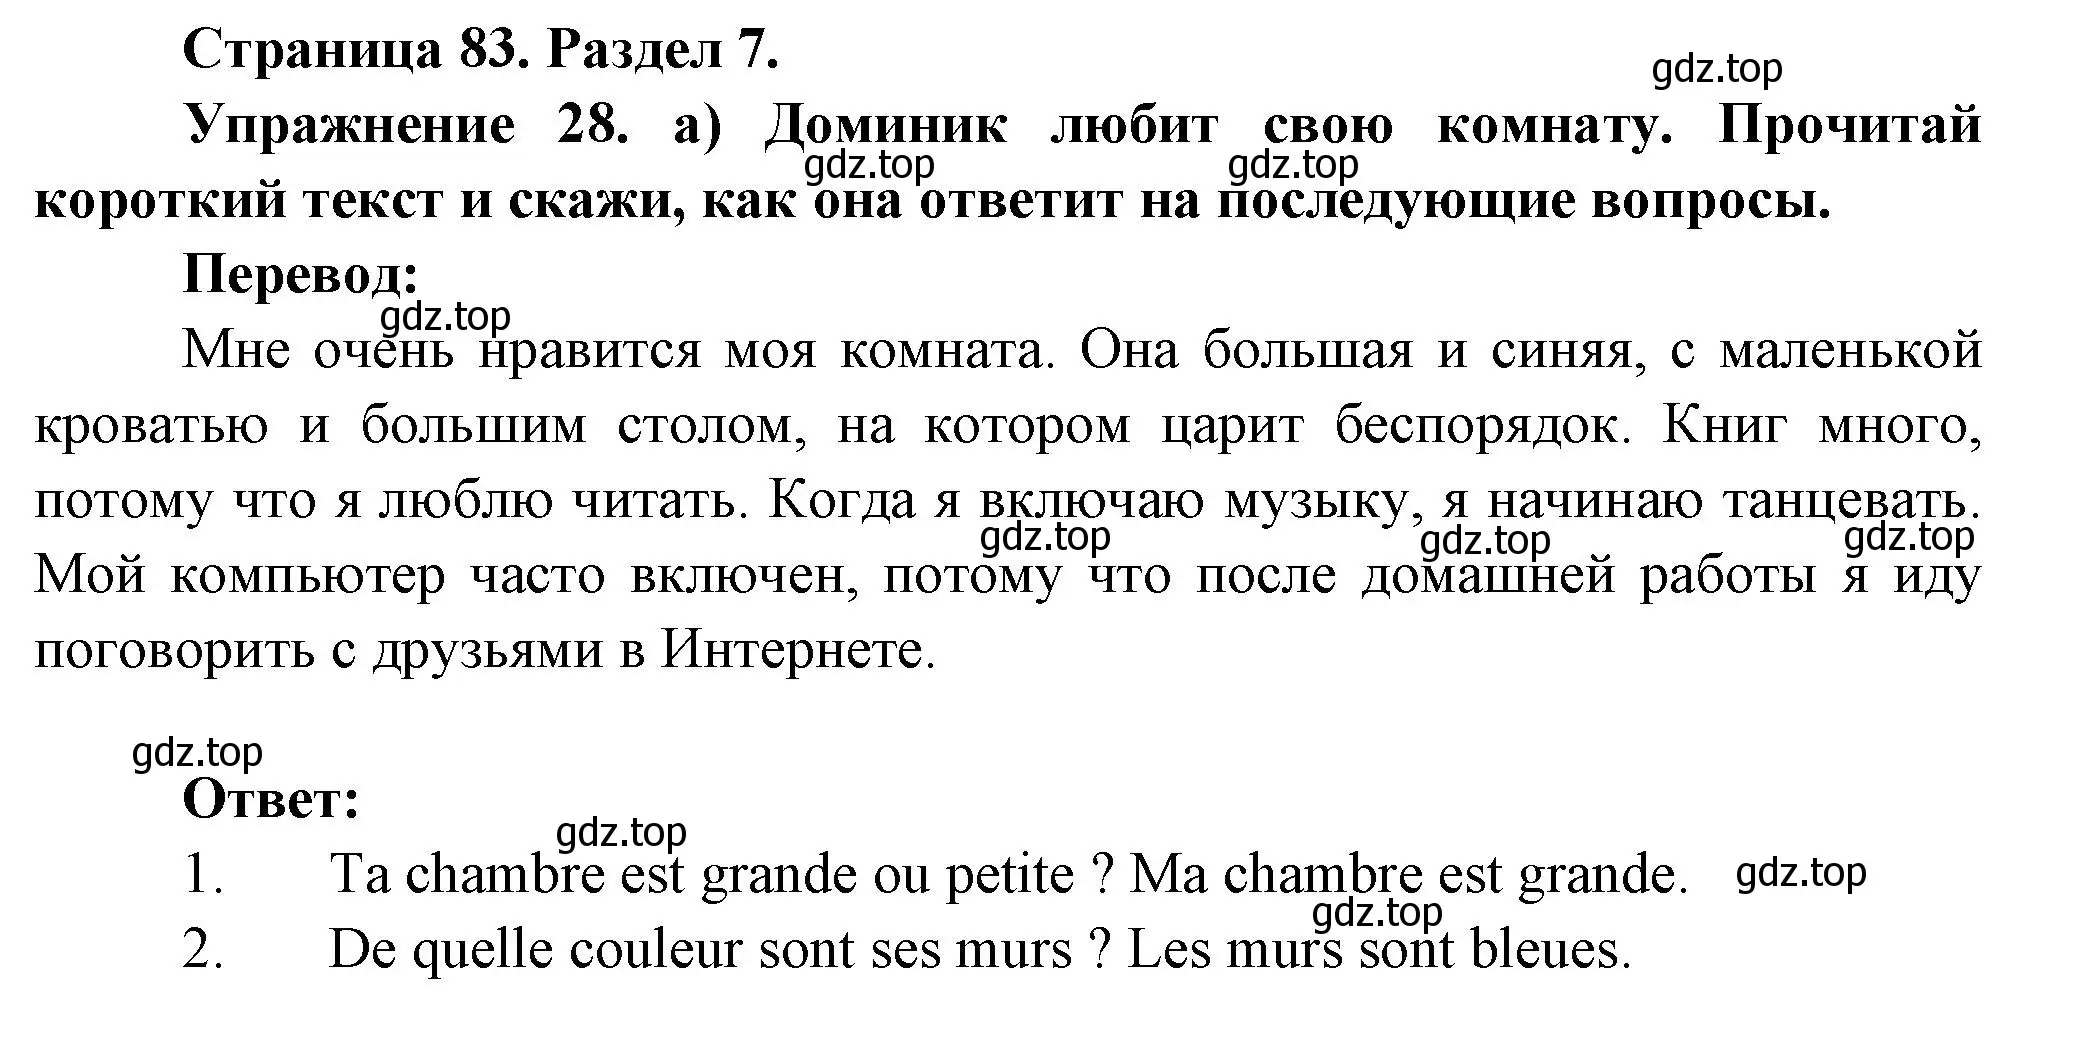 Решение номер 28 (страница 83) гдз по французскому языку 5 класс Береговская, Белосельская, учебник 2 часть